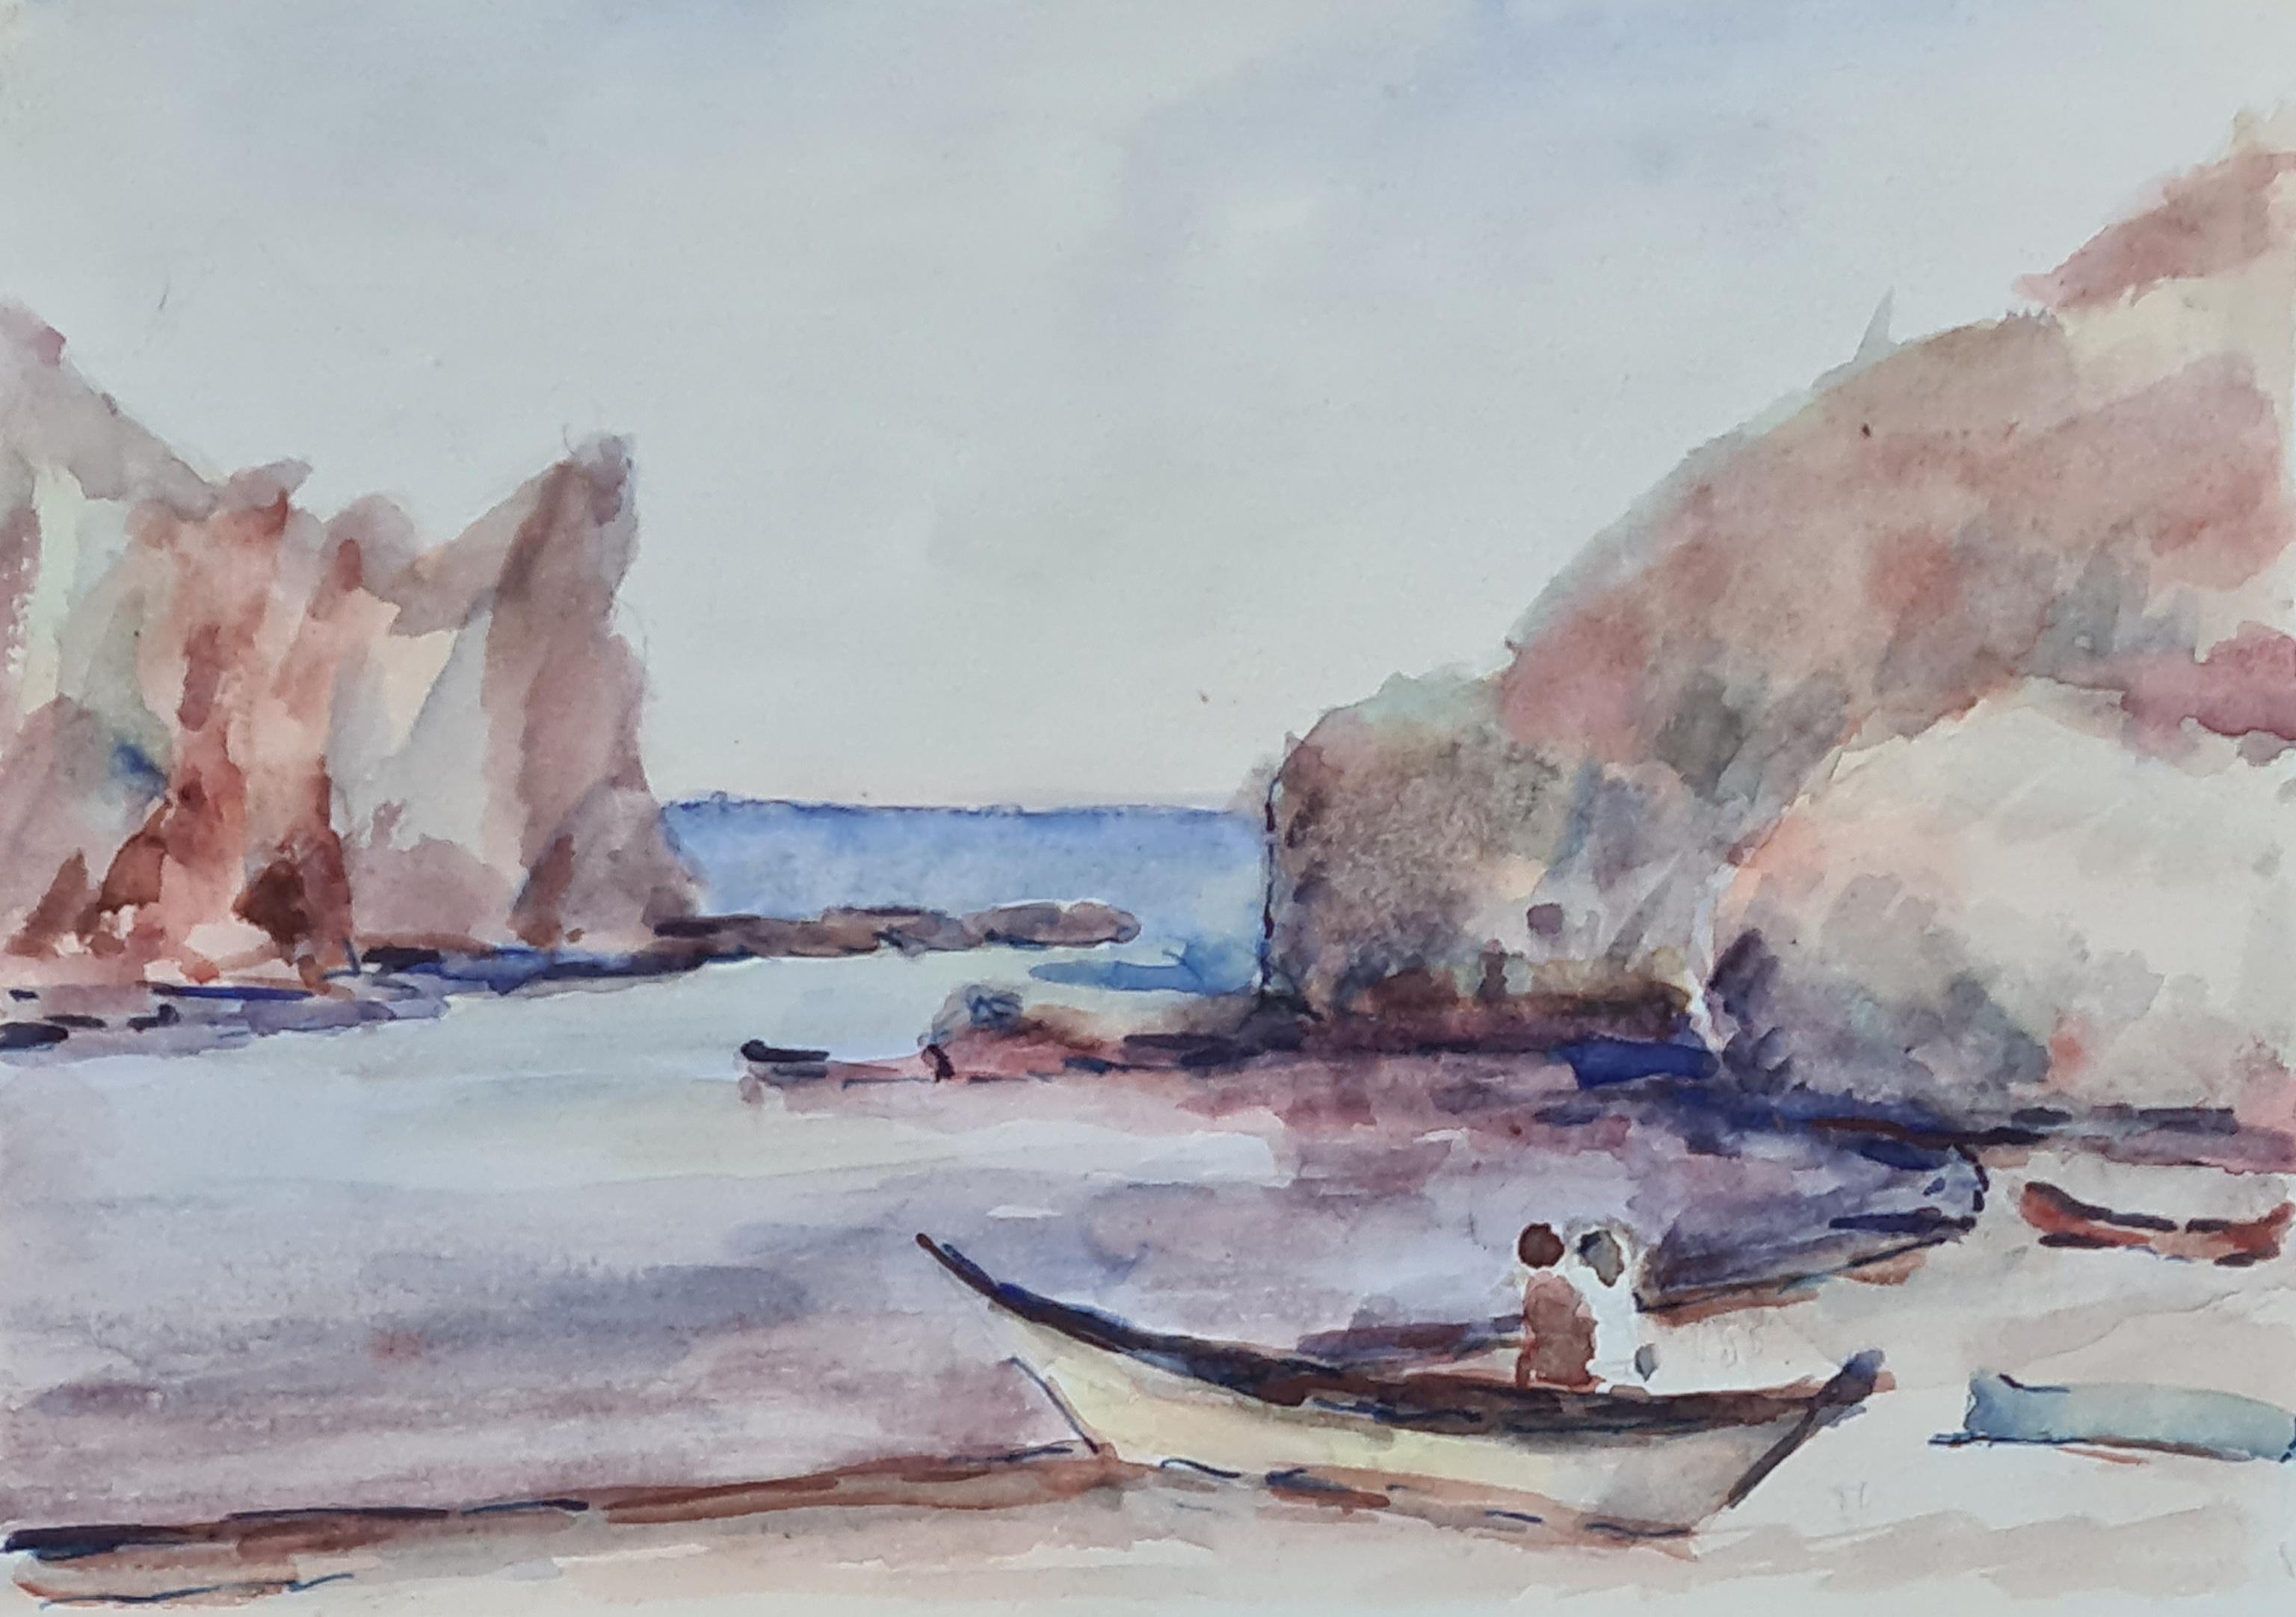 Aquarelle impressionniste française des années 1930 représentant une scène côtière, marine et de plage